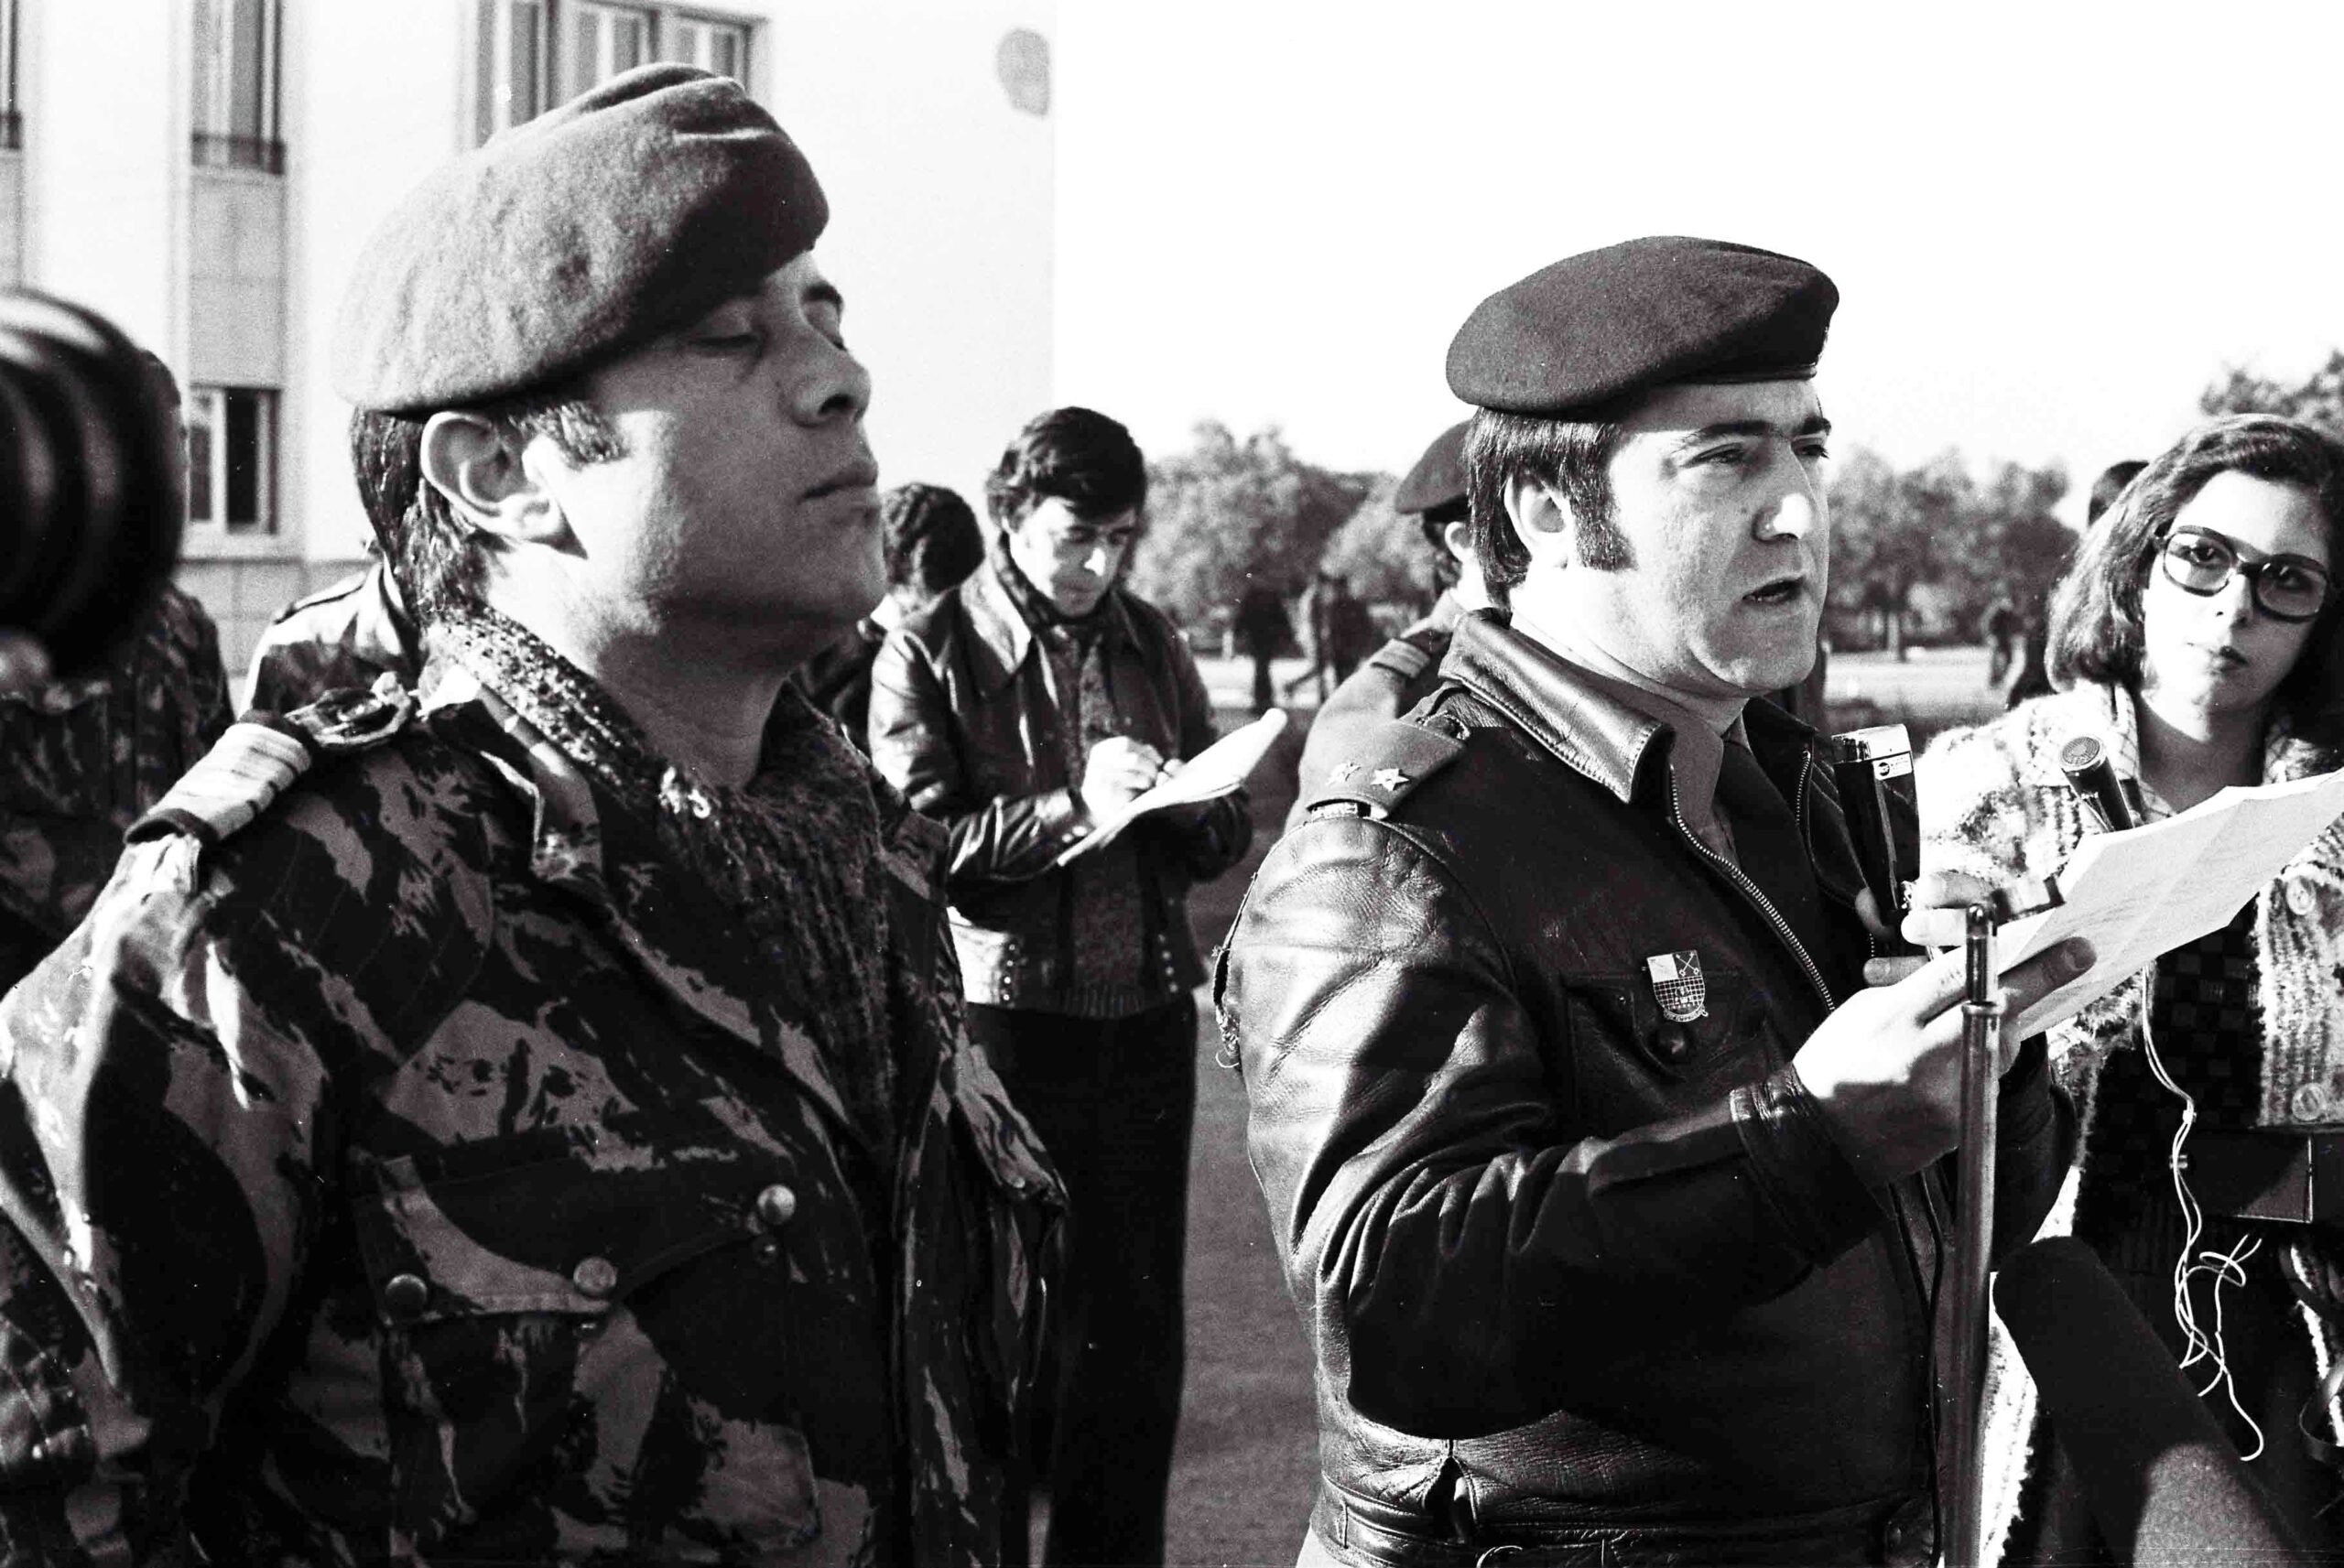 Jaime Neves e Vasco Lourenço, dois dos protagonistas do 25 de Novembro, no Regimento de Comandos da Amadora. Fotografia de Marques Valentim